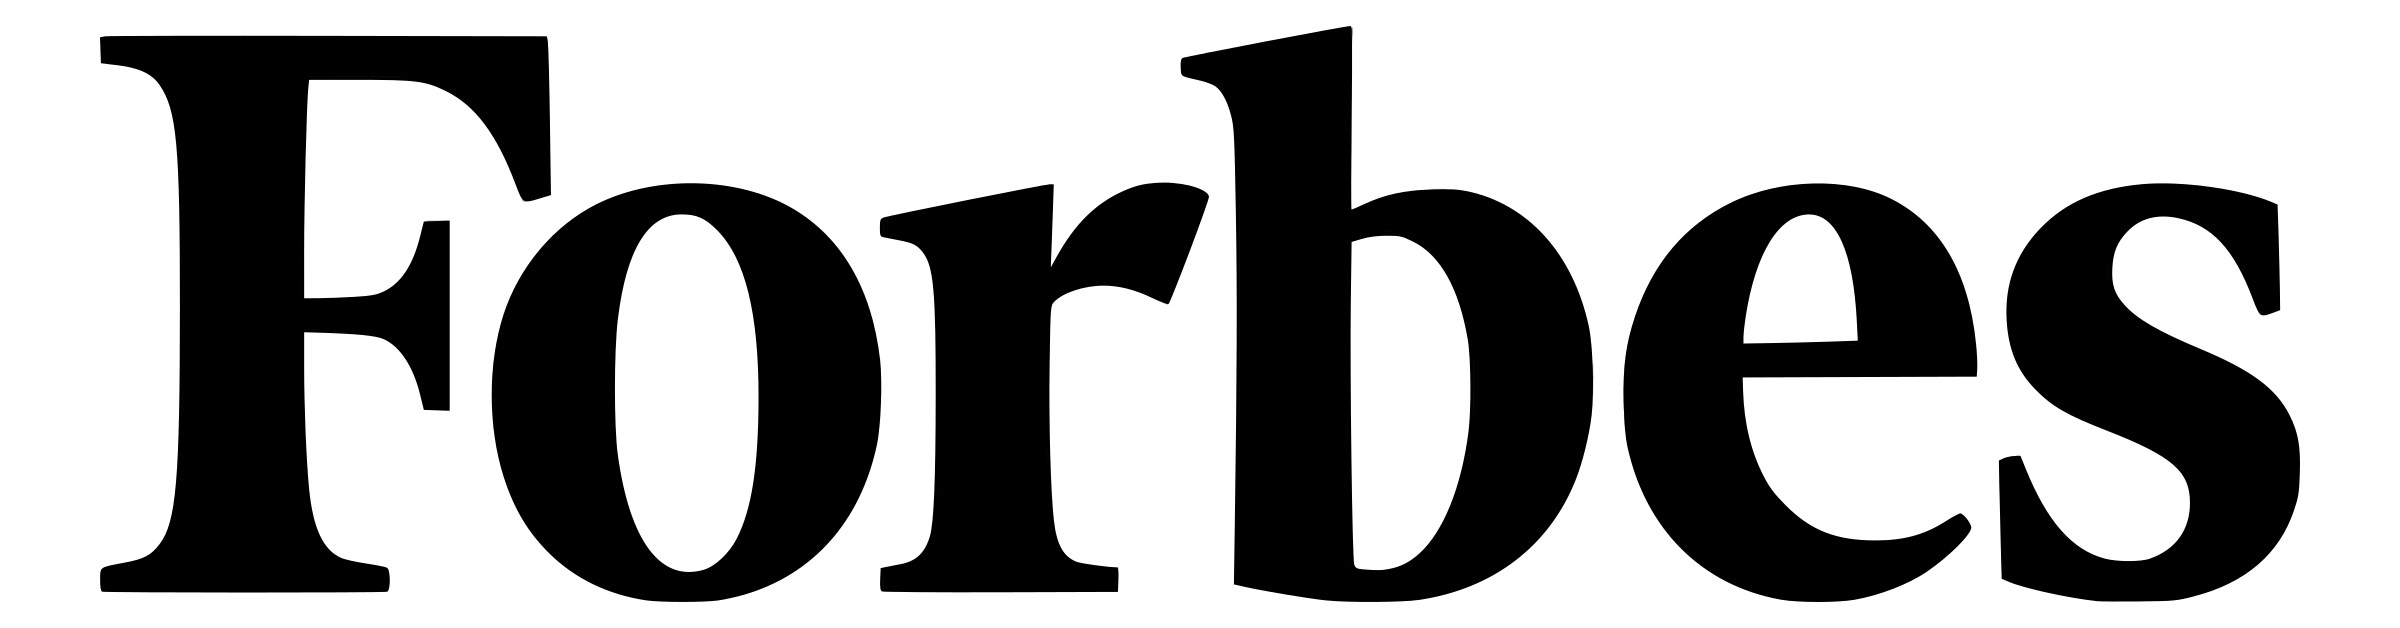 forbes-logo-black-transparent.png